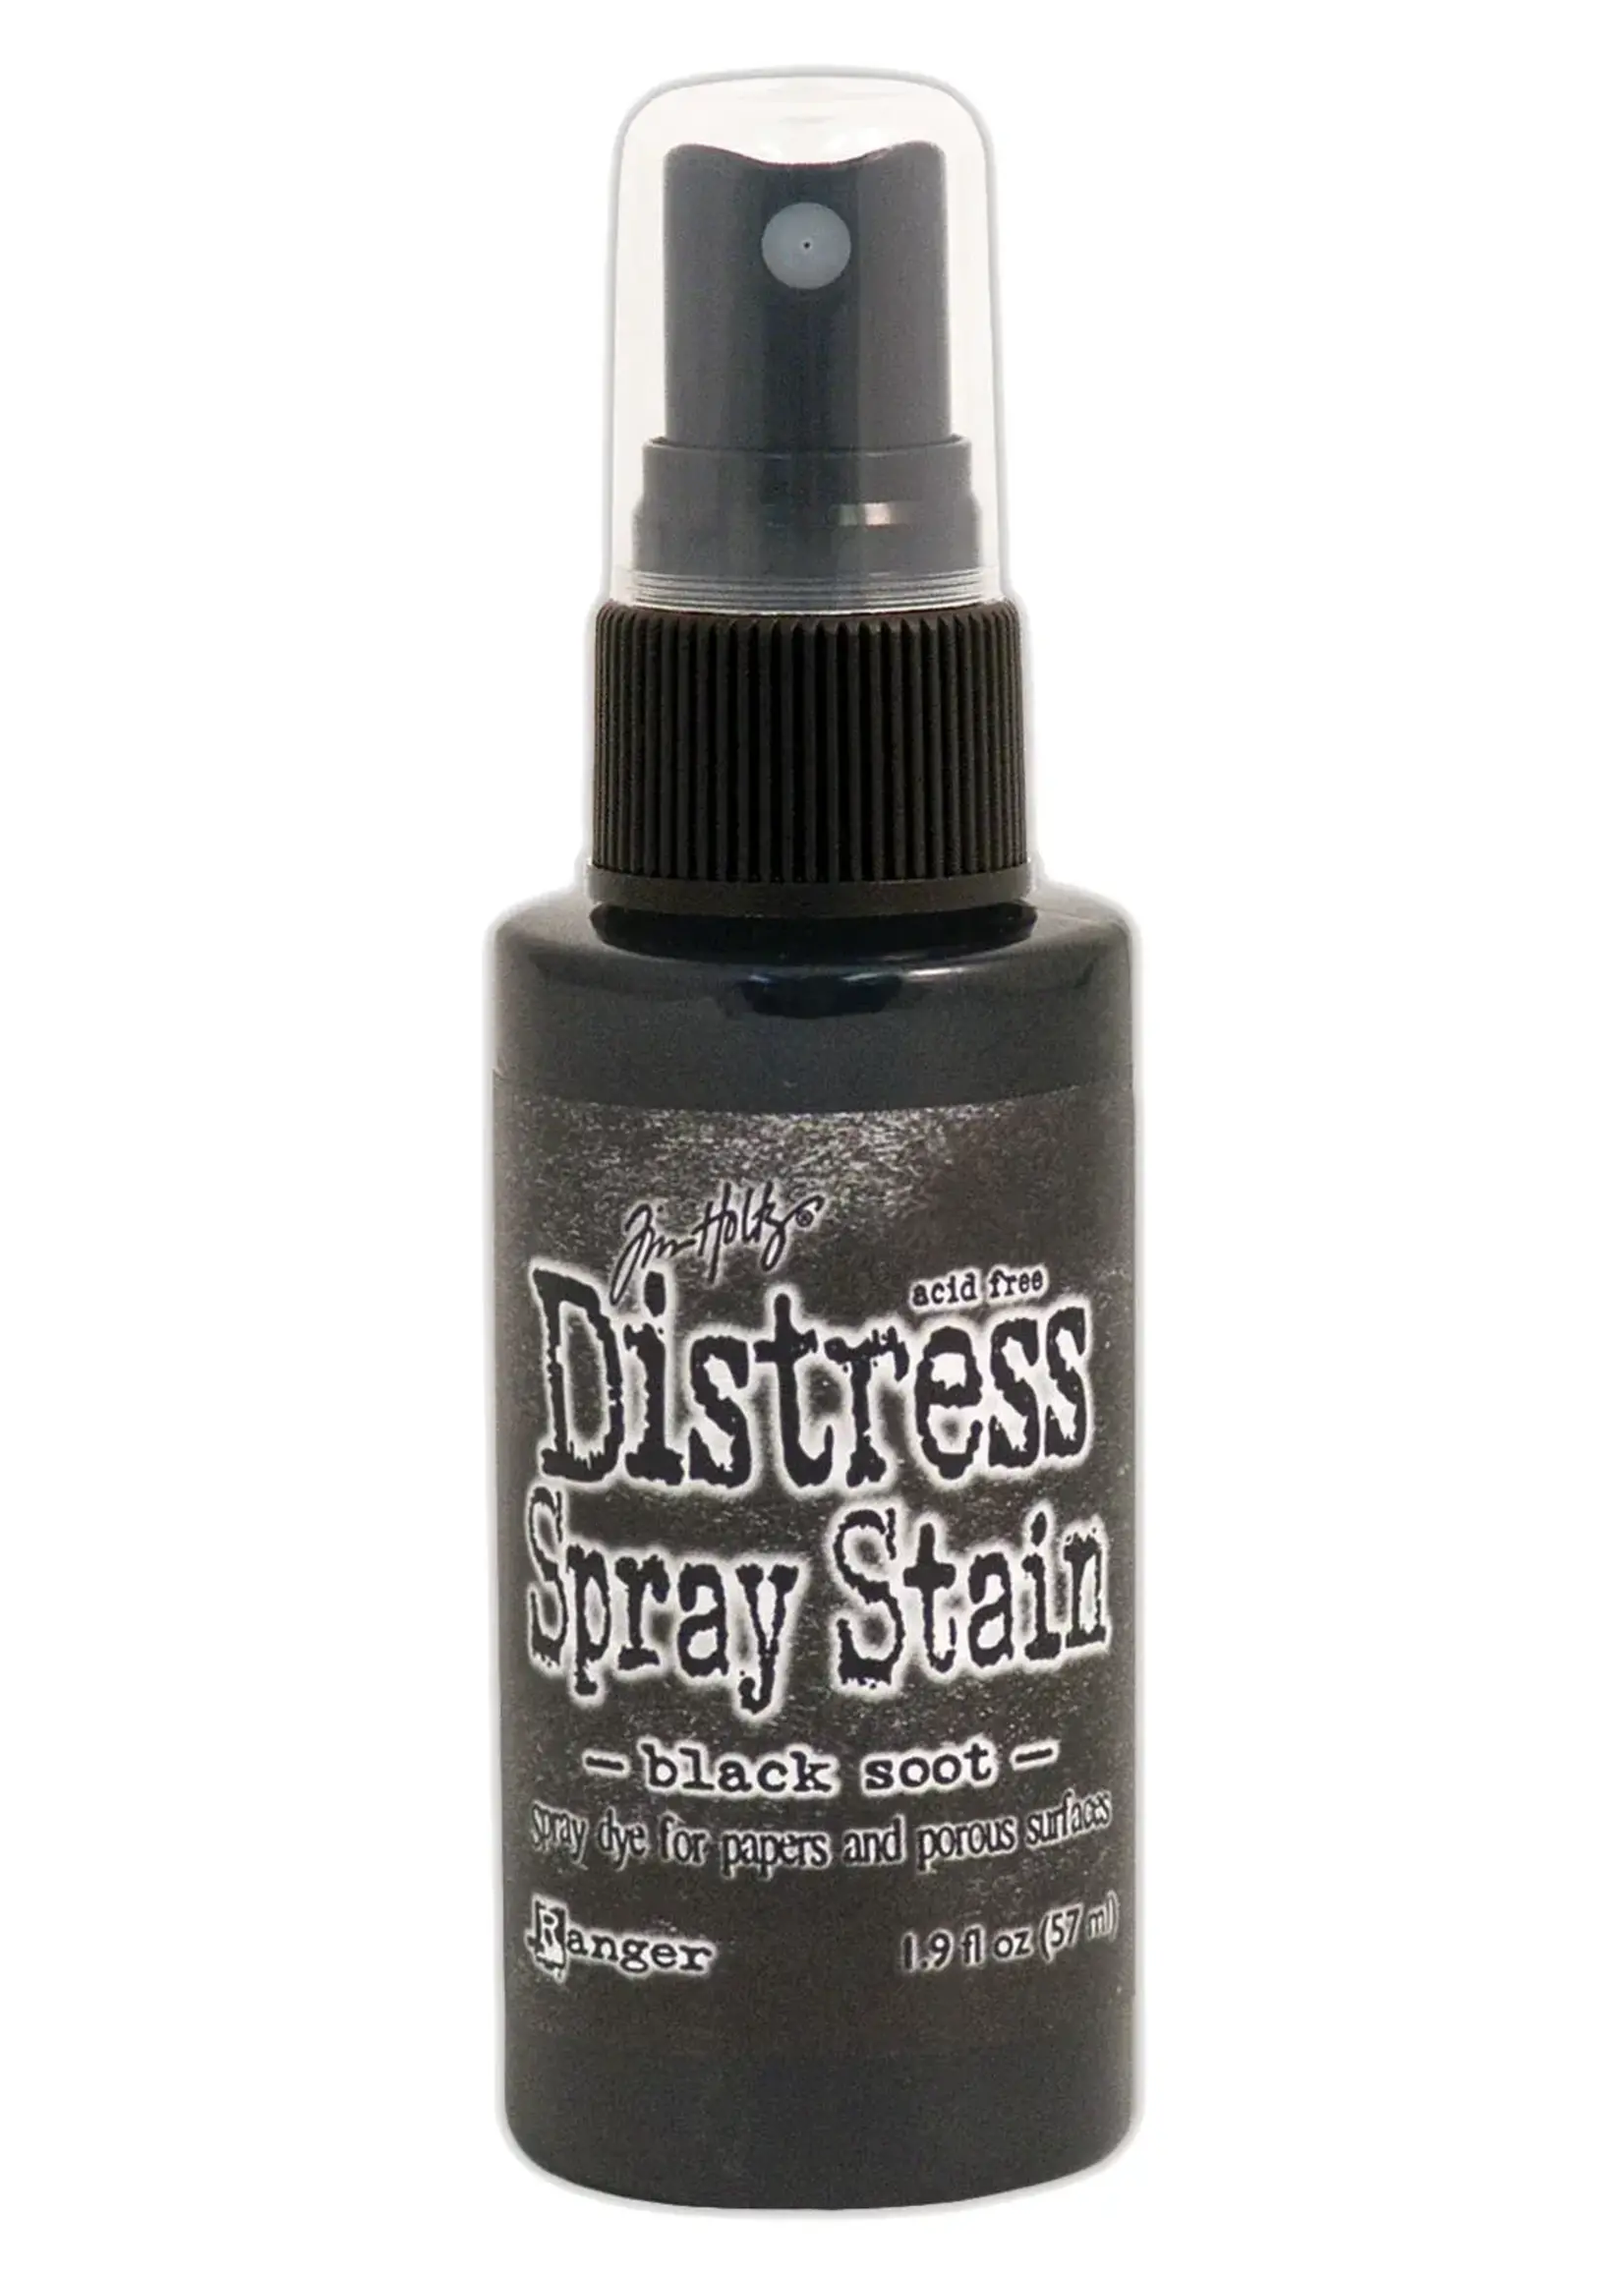 Ranger Ranger • Distress spray stain Black soot Ranger Ink15TSS42167